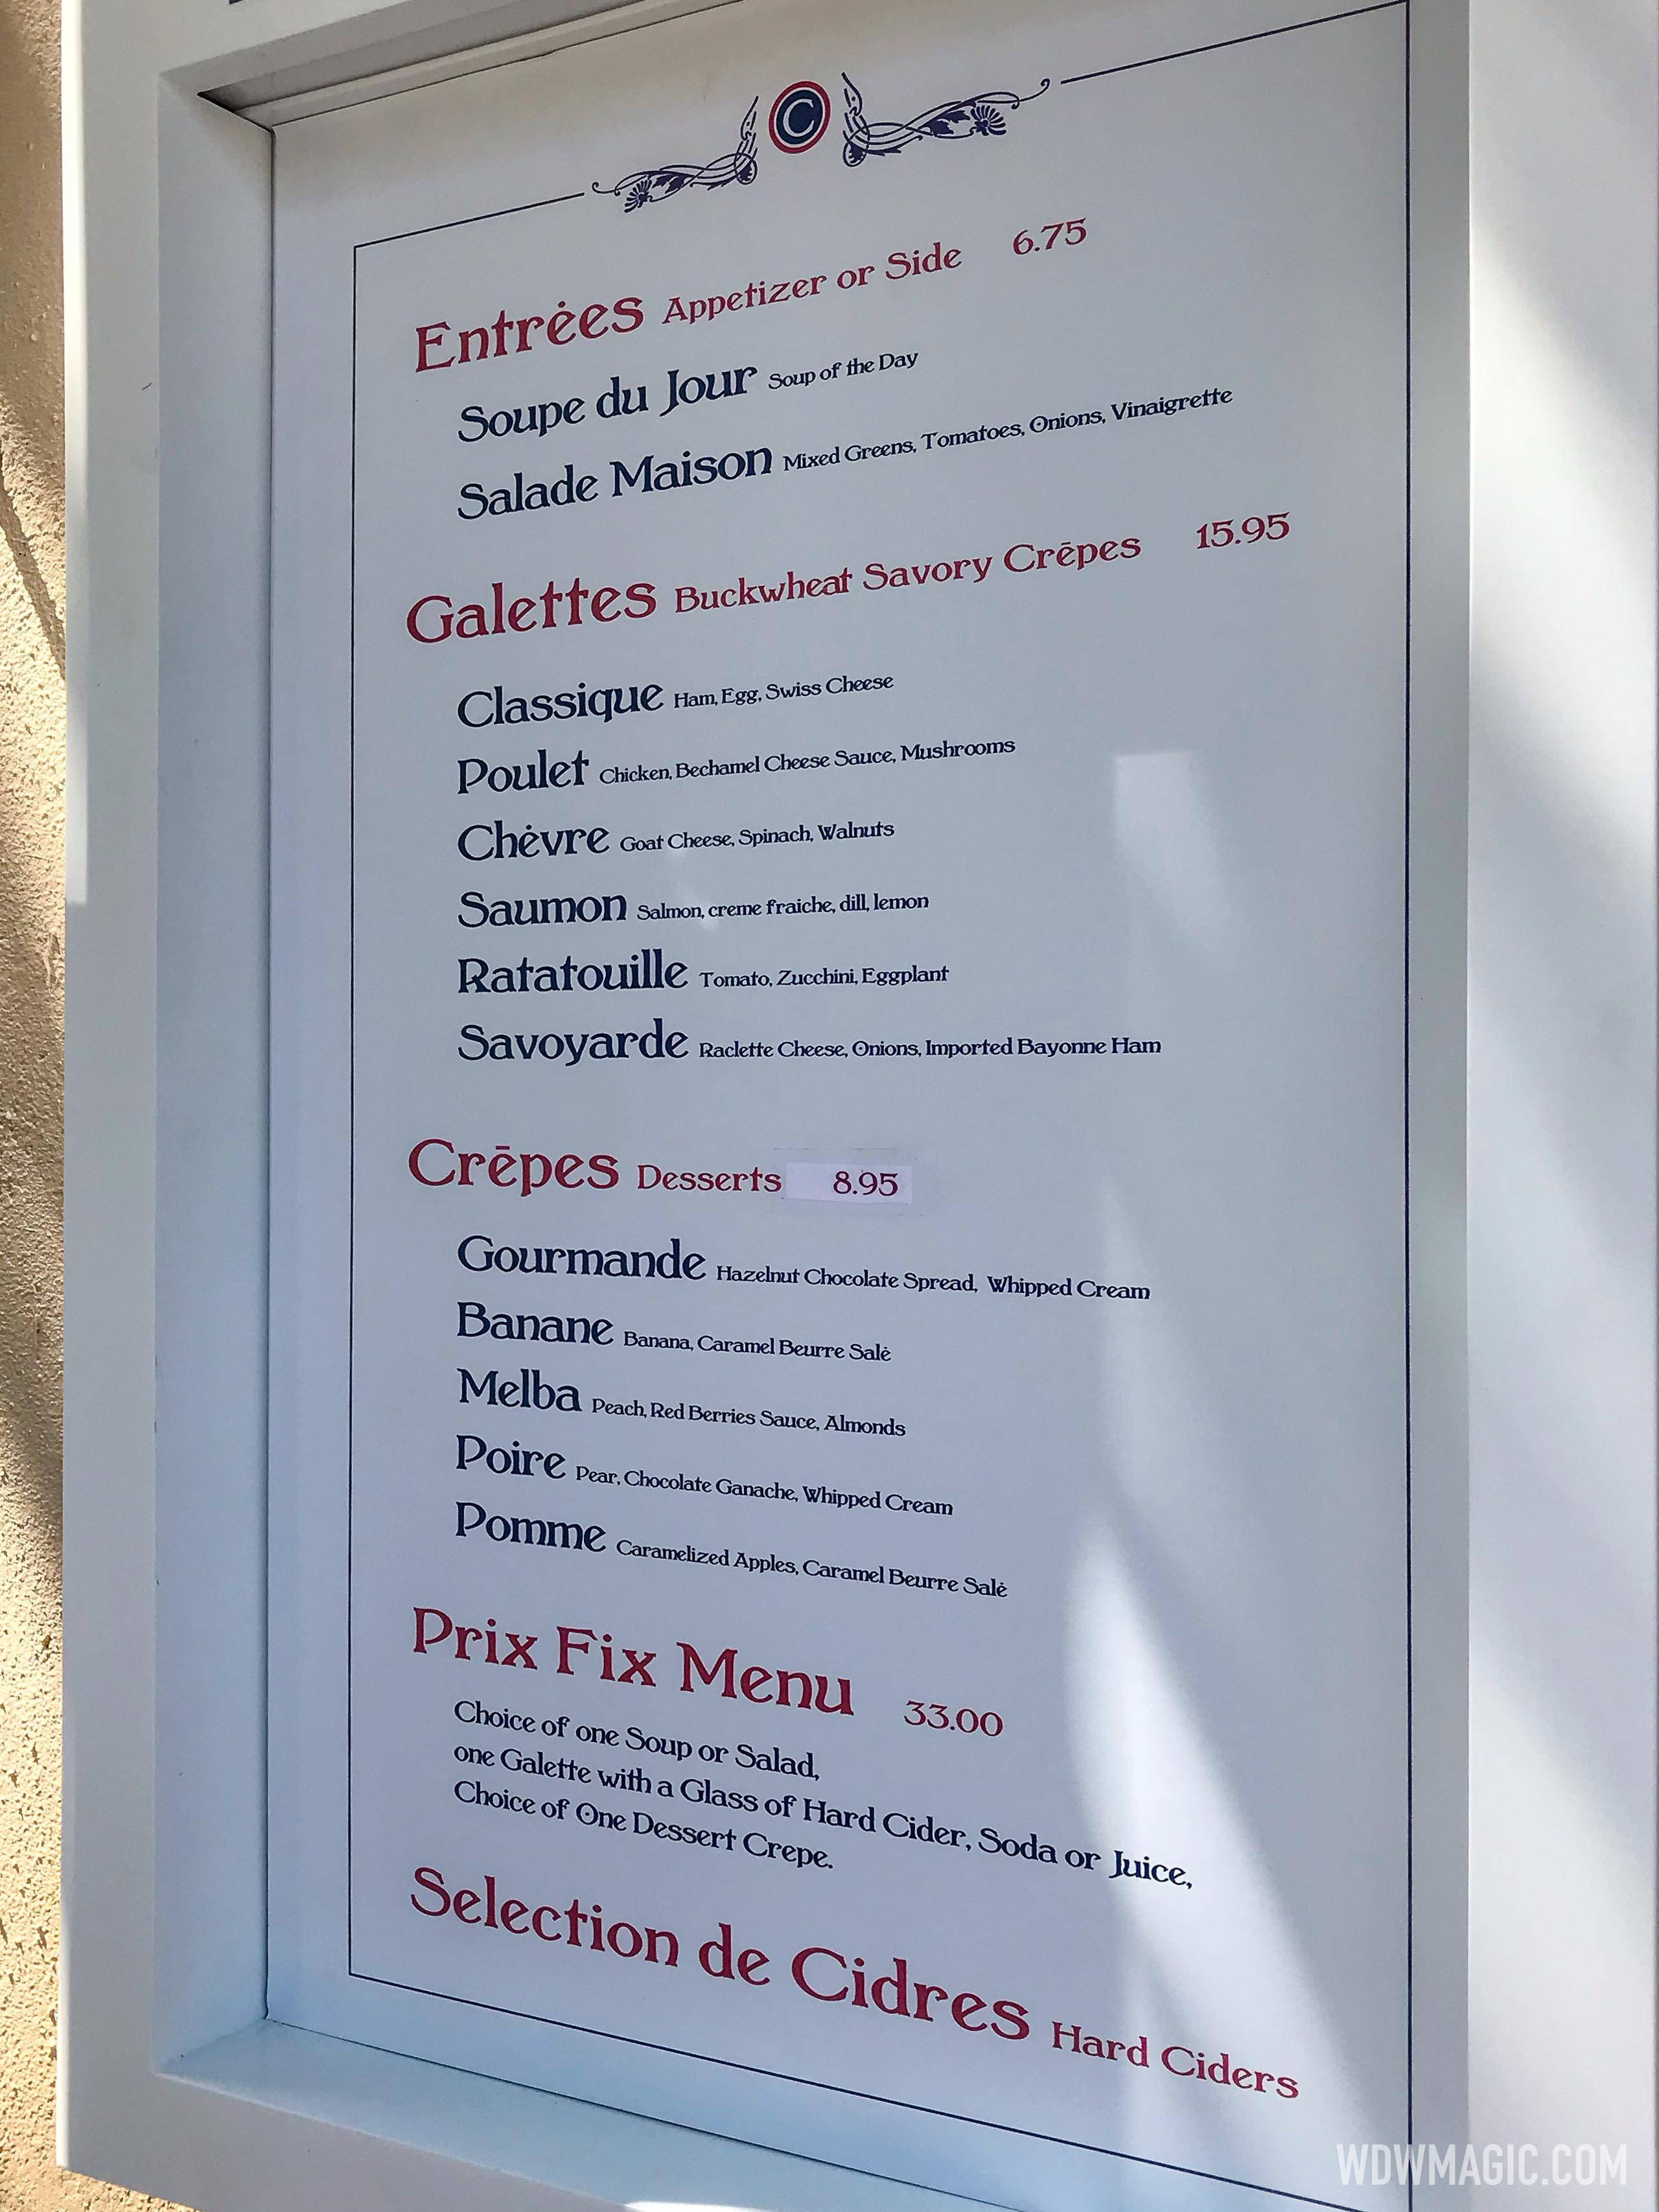 La Crêperie de Paris table service menu